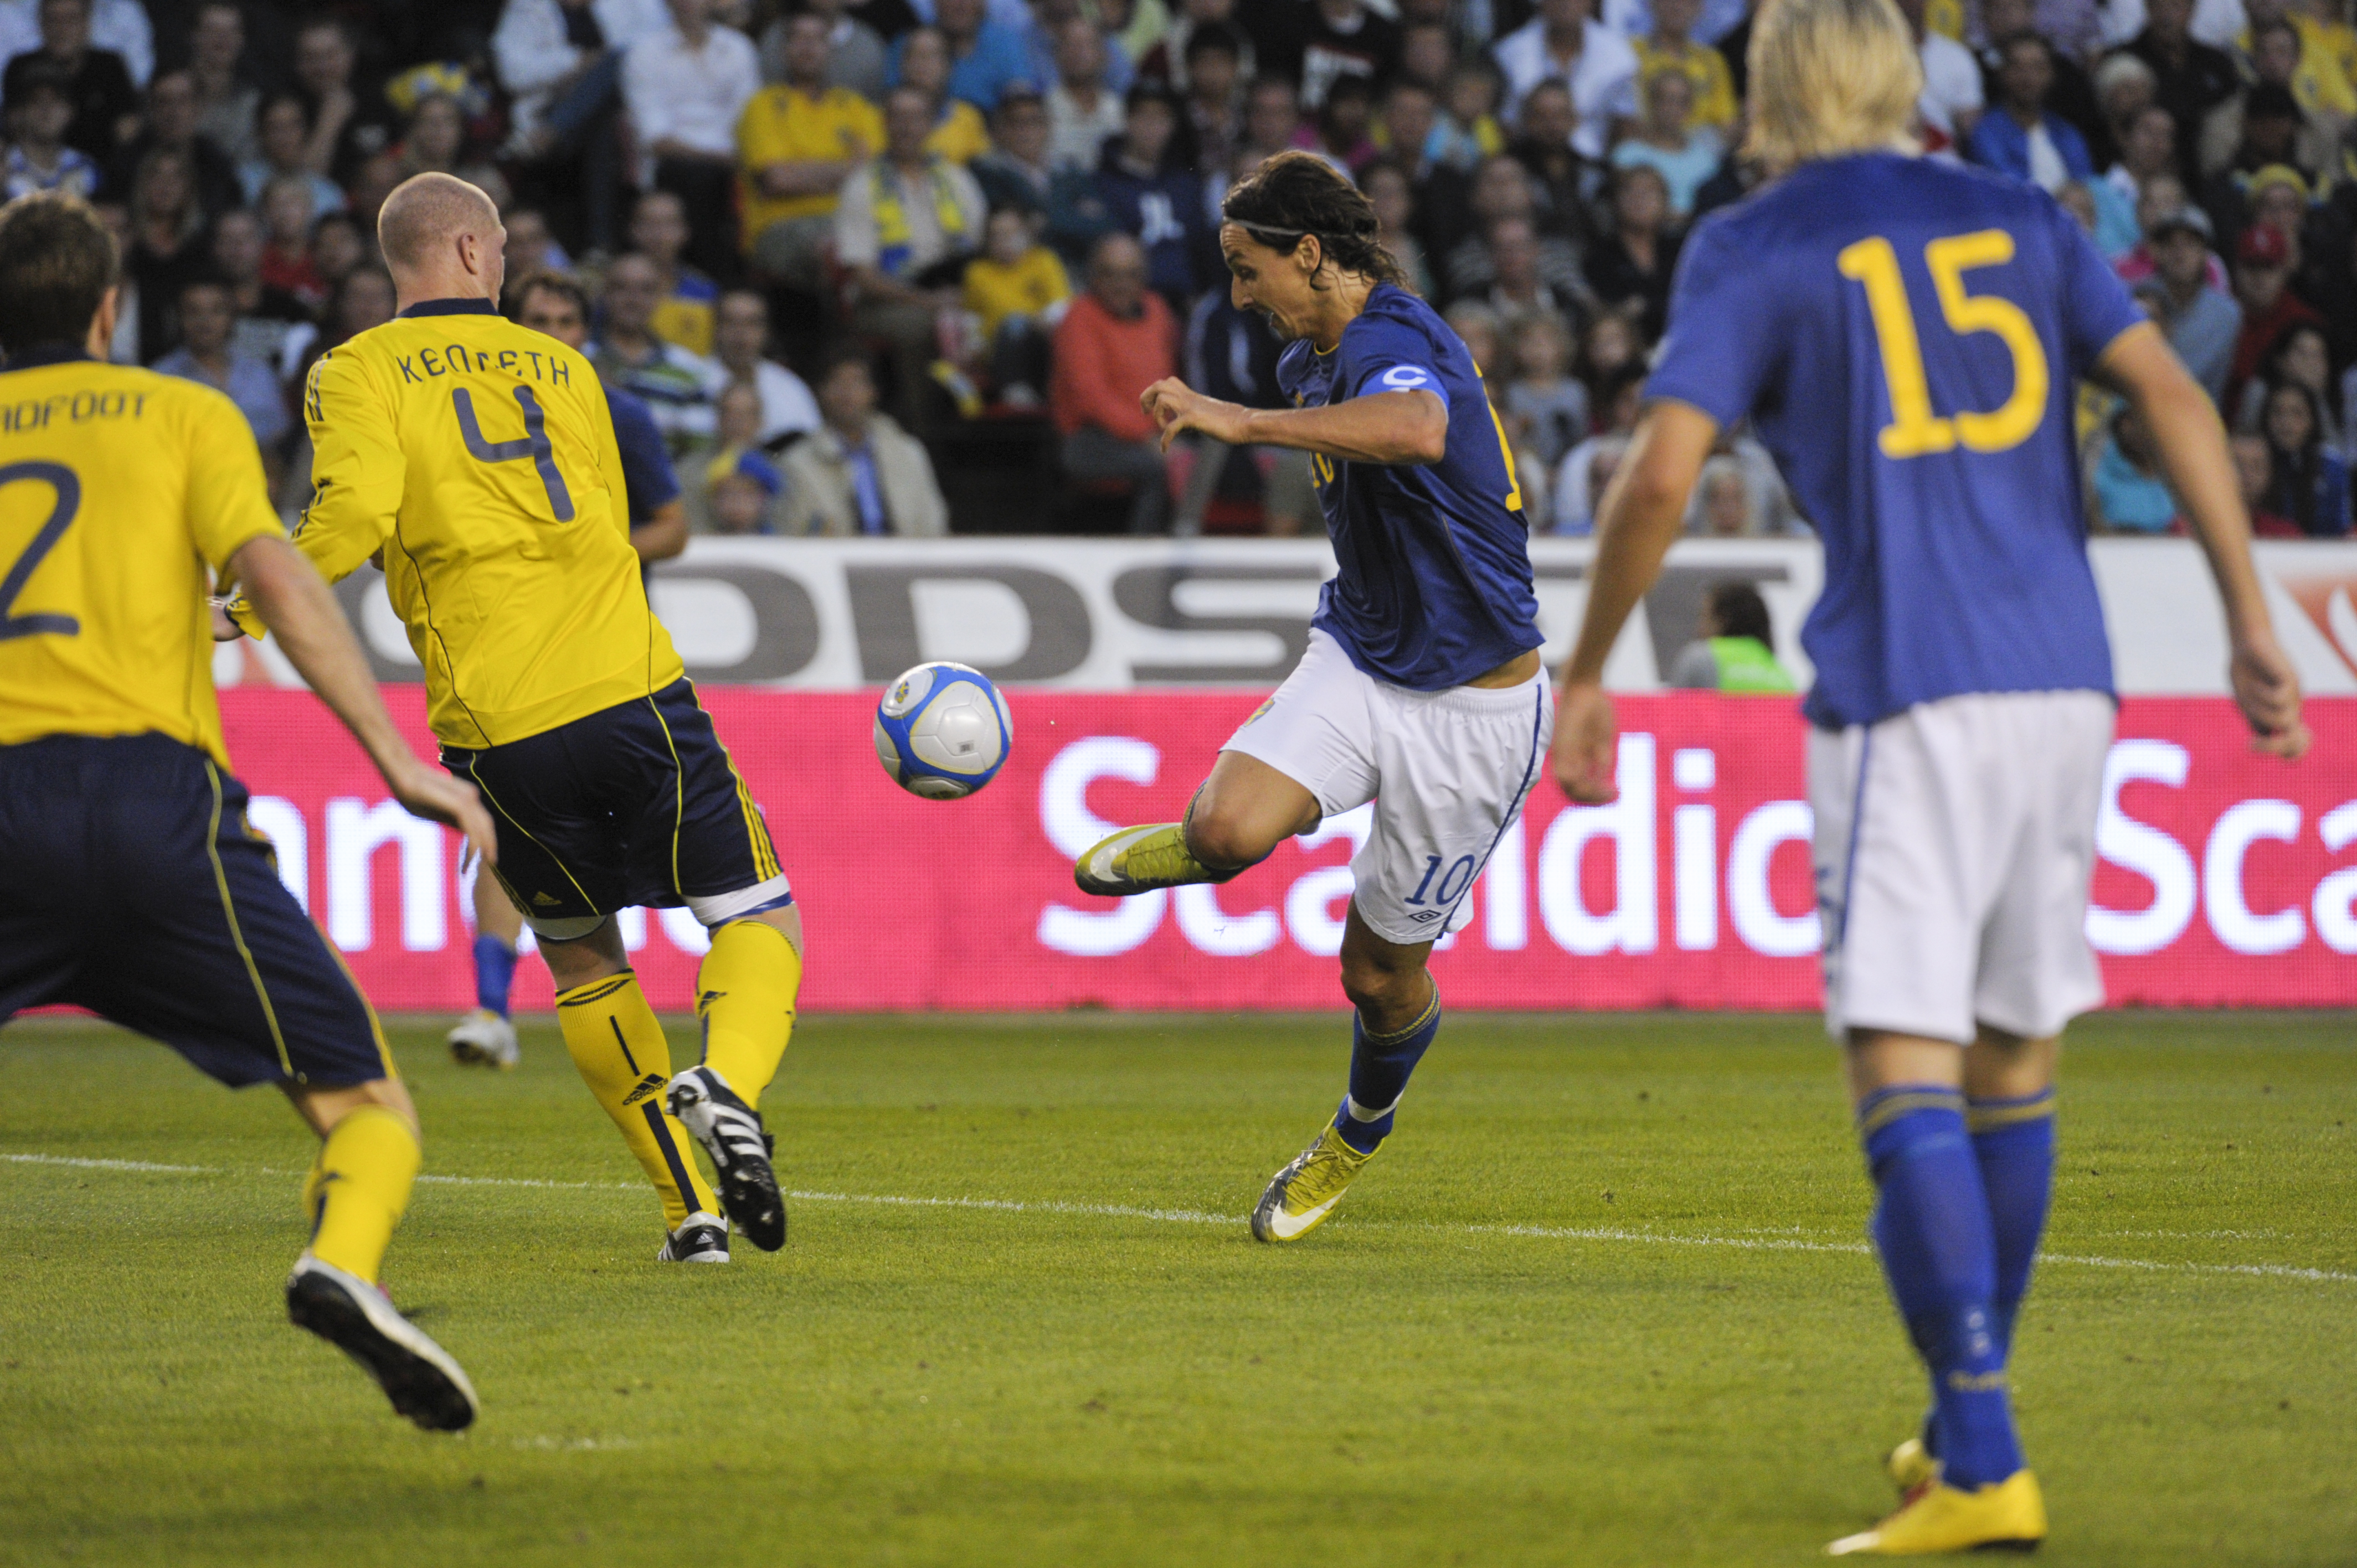 Matchen ryks isär. Fortsatt 3-0 till Sverige.